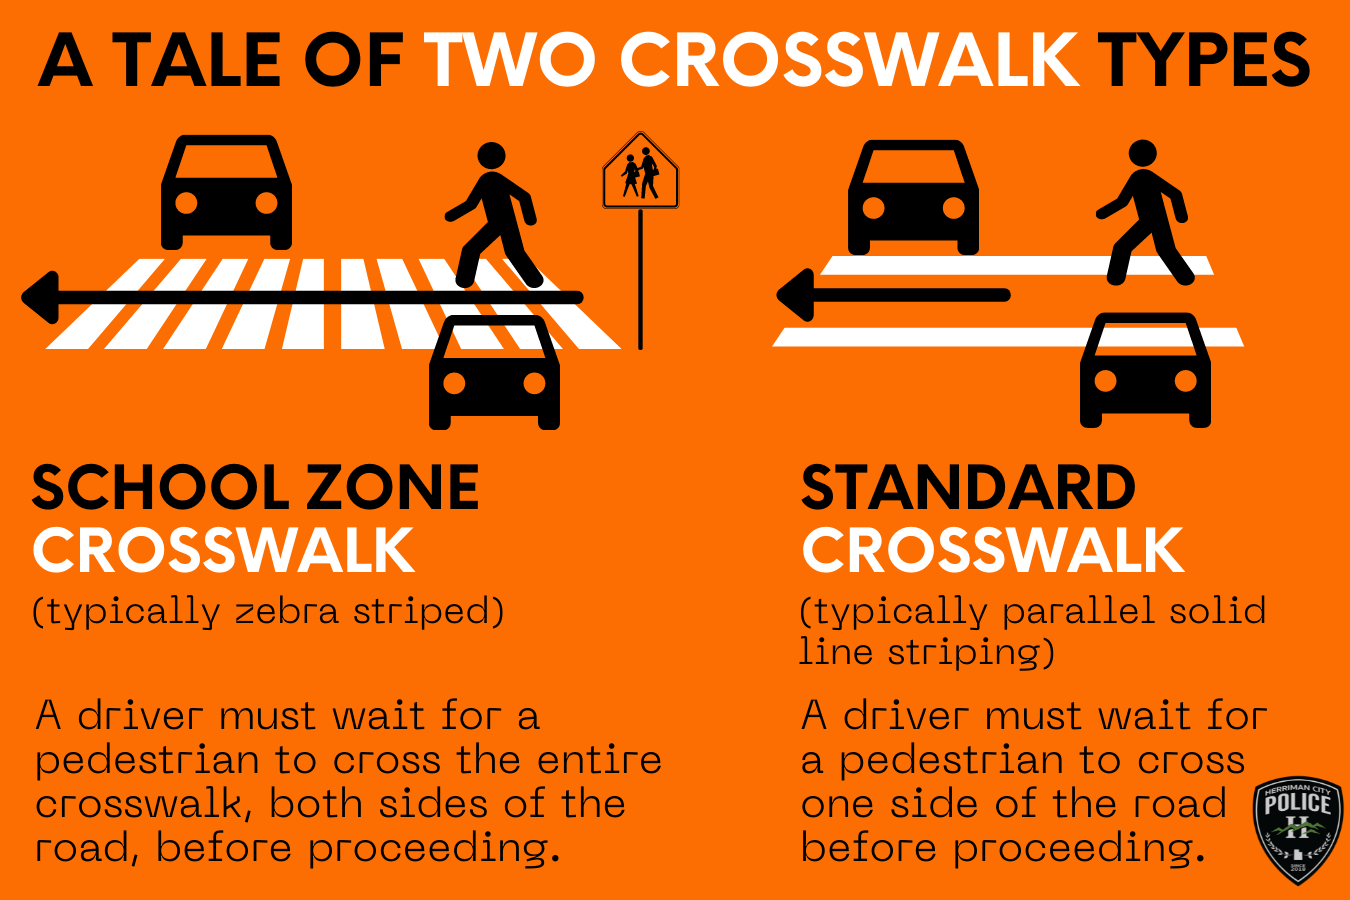 Crosswalk types